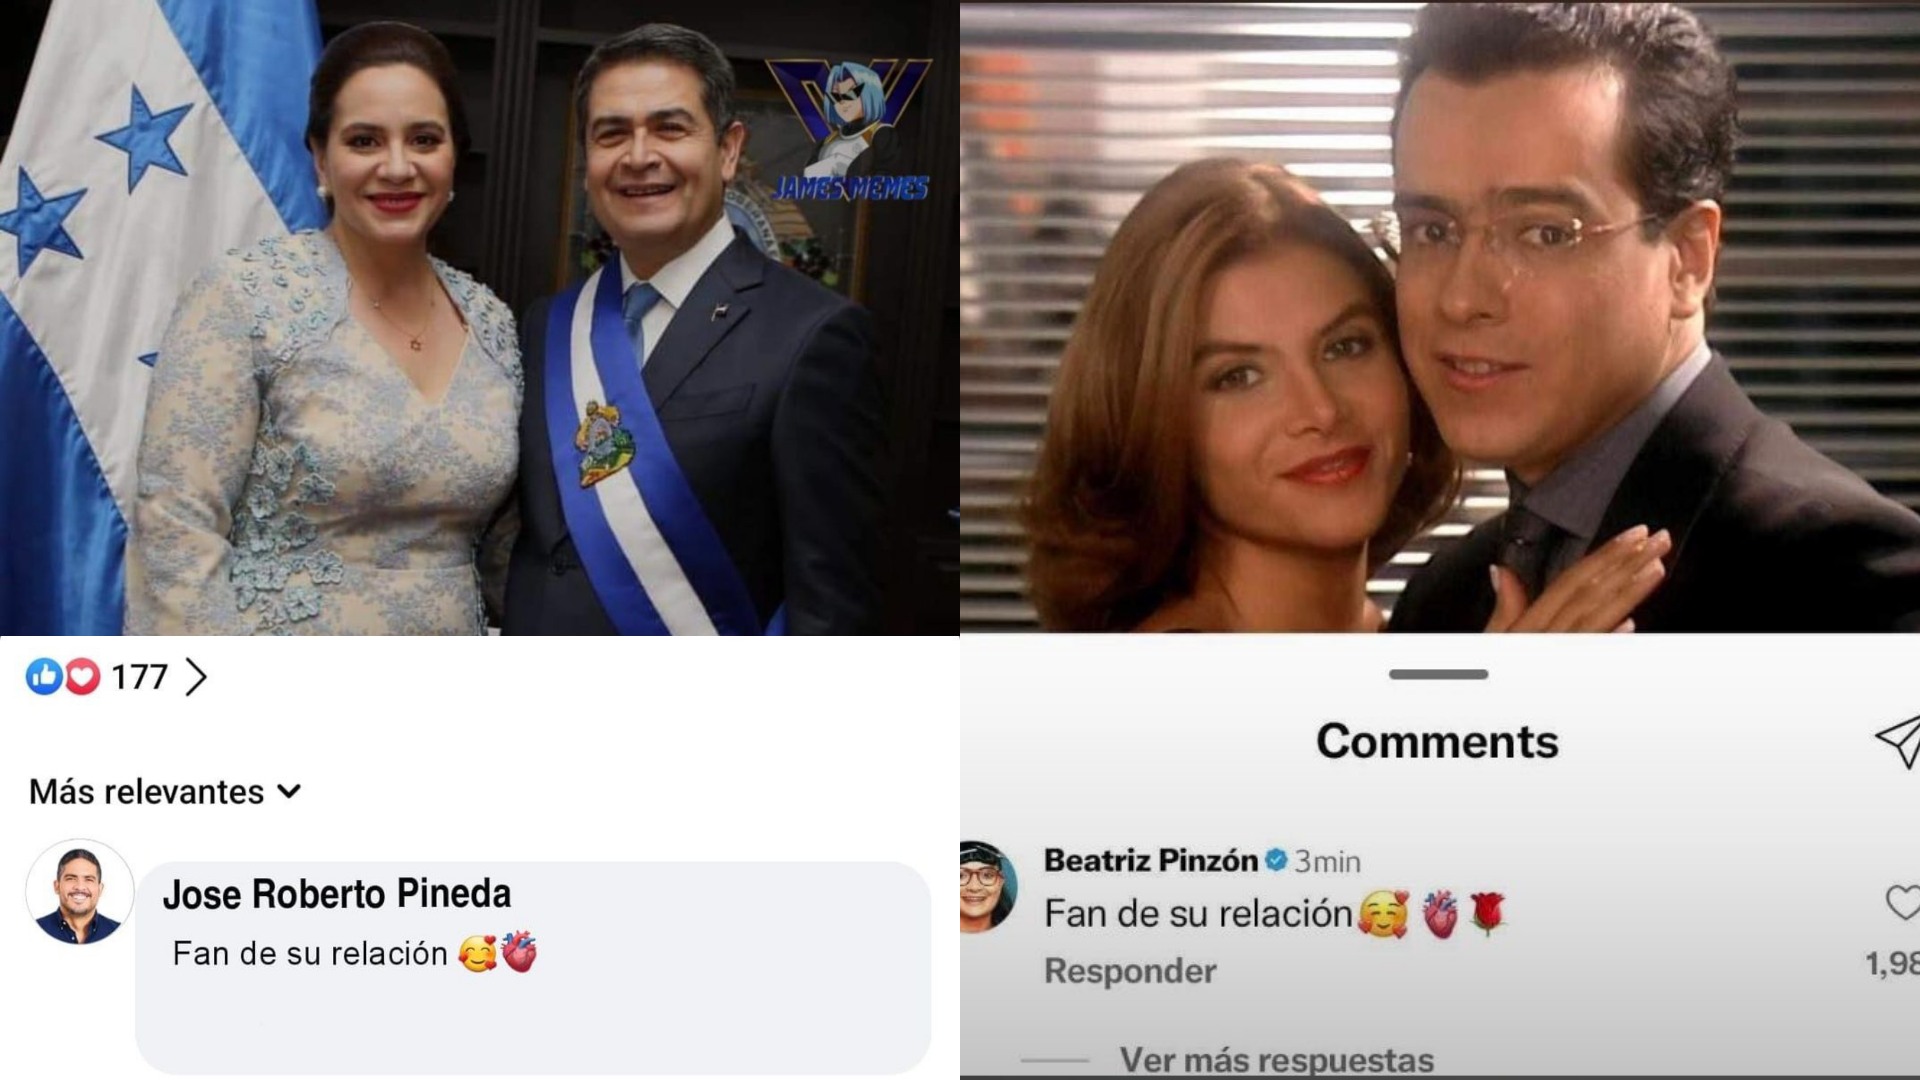 Las redes sociales estallan de memes y los hondureños no se quedan atrás